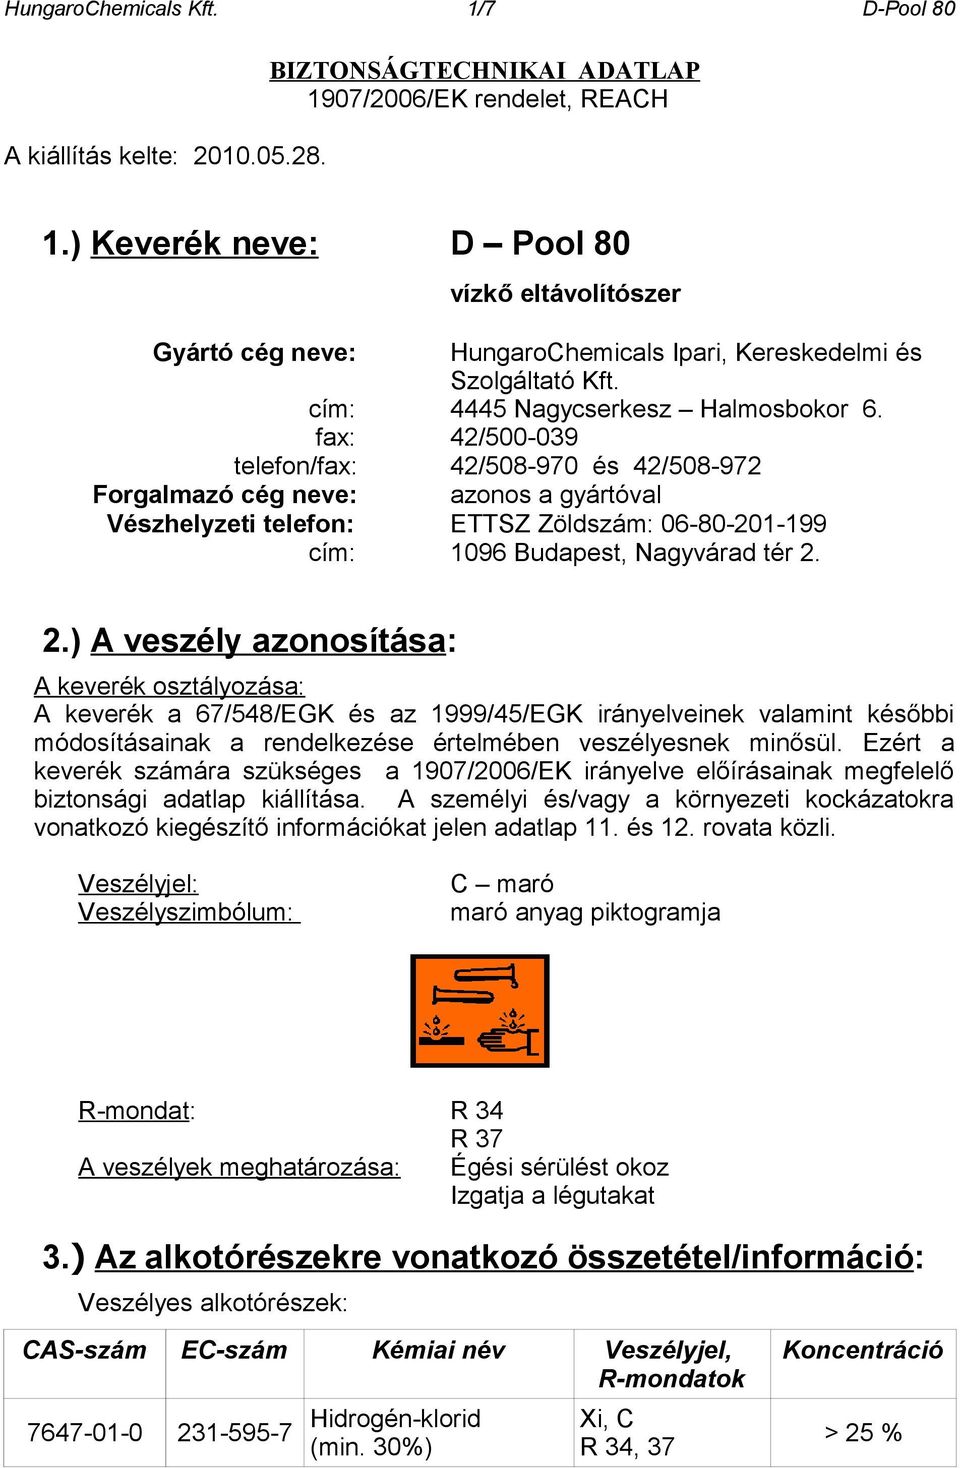 fax: 42/500-039 telefon/fax: 42/508-970 és 42/508-972 Forgalmazó cég neve: azonos a gyártóval Vészhelyzeti telefon: ETTSZ Zöldszám: 06-80-201-199 cím: 1096 Budapest, Nagyvárad tér 2.